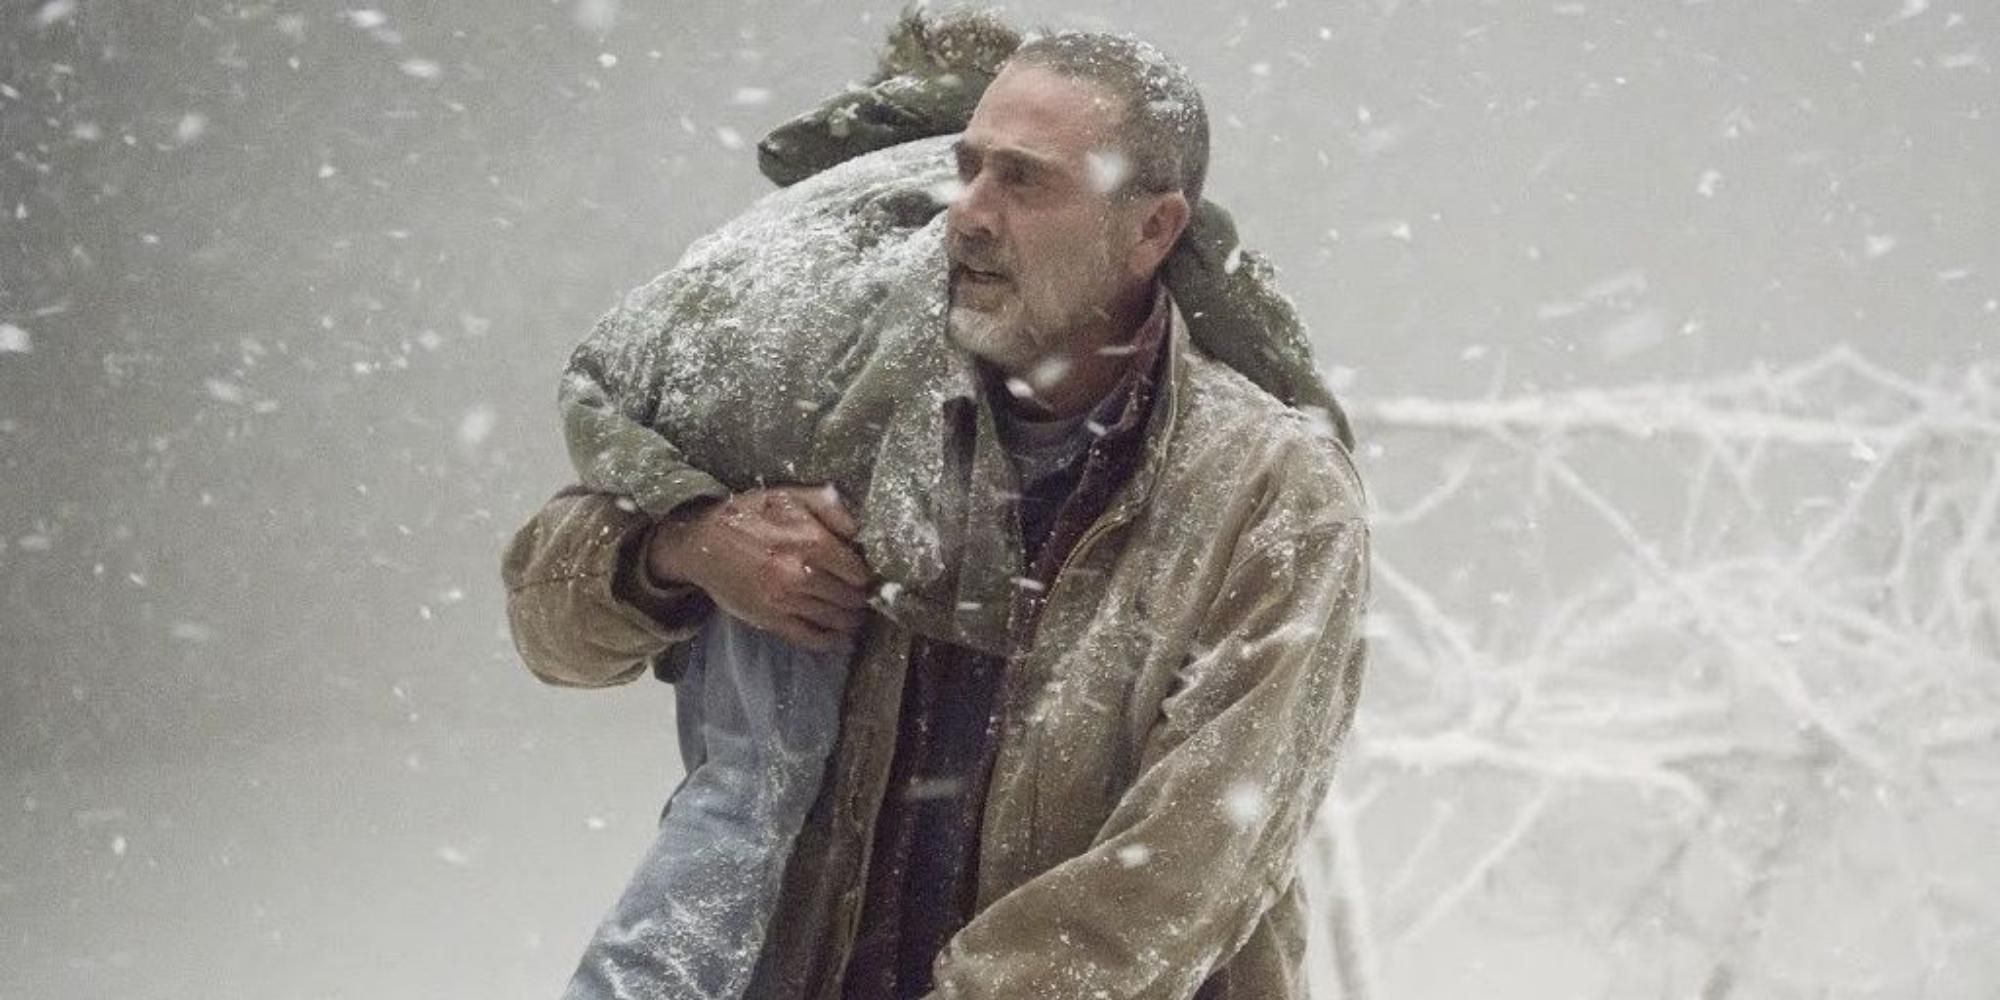 Negan salva Judith de uma tempestade de neve em The Walking Dead